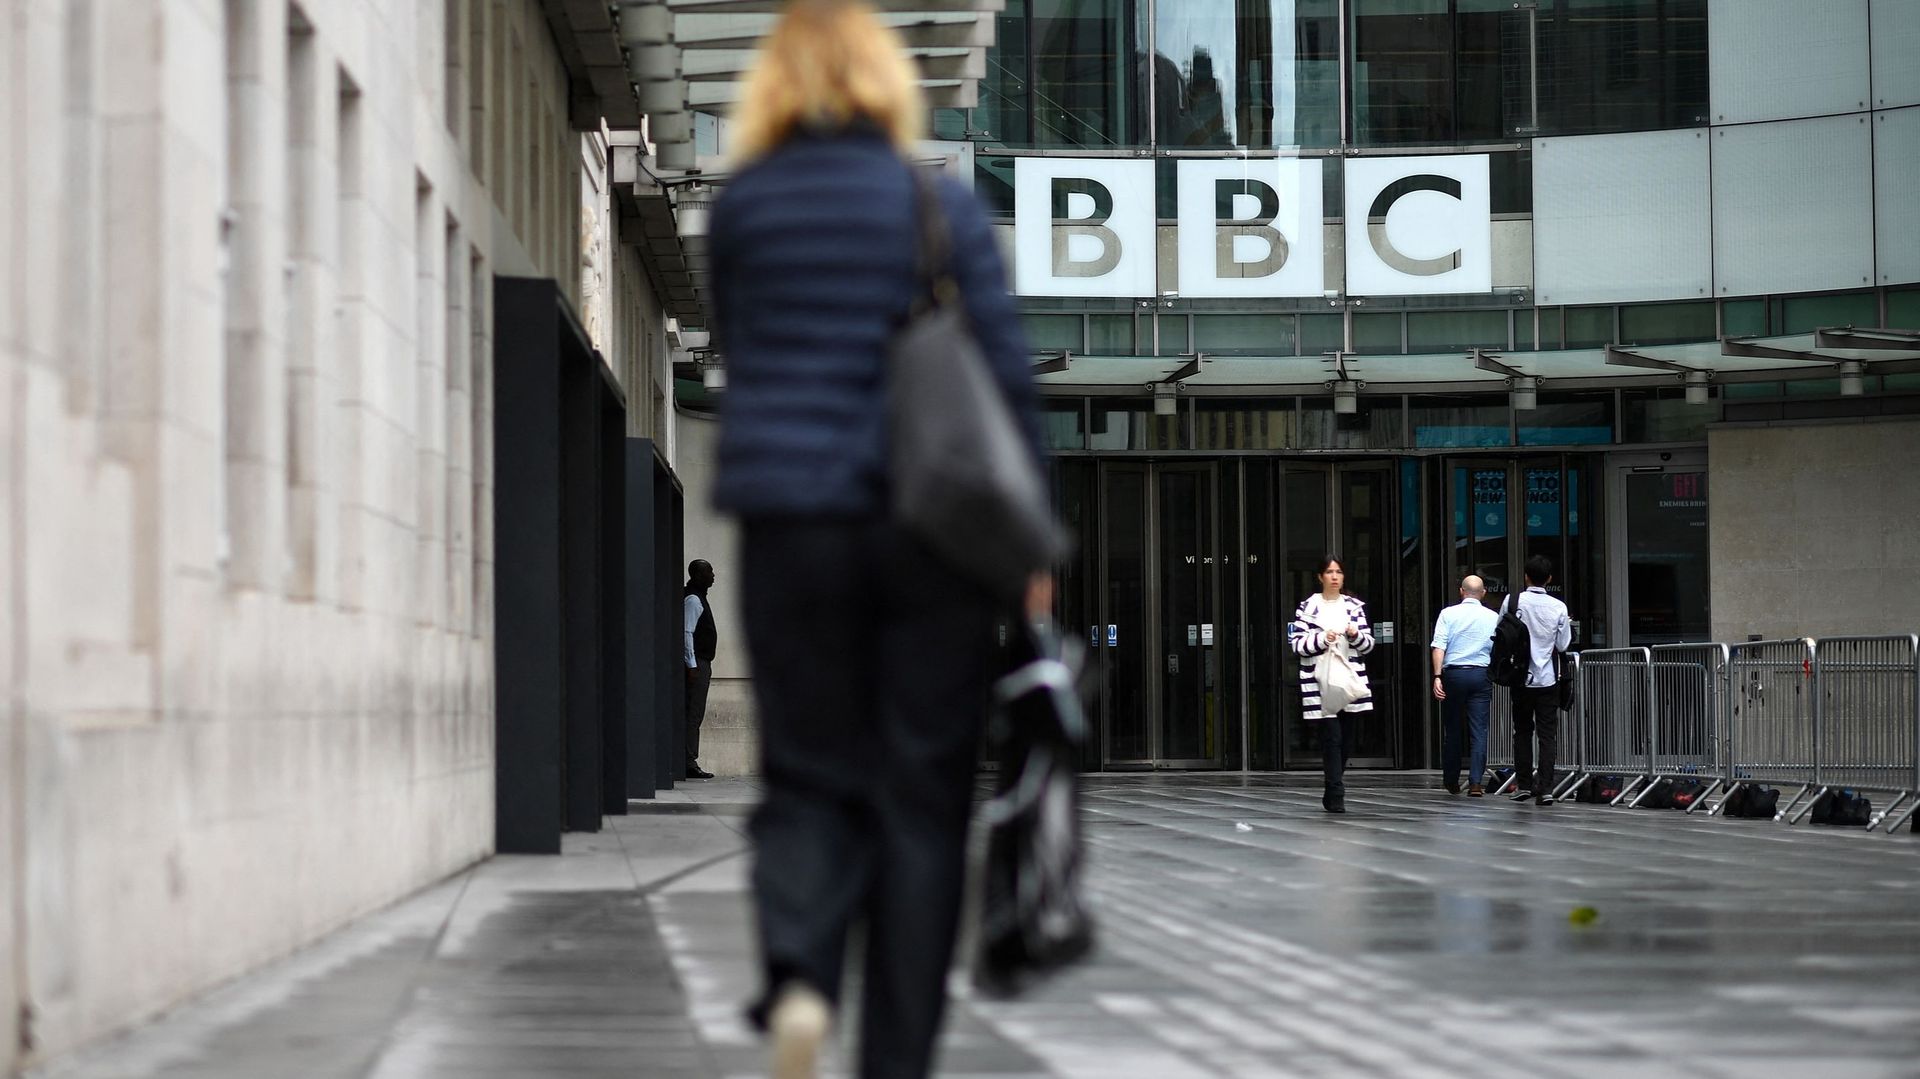 La BBC est ancrée dans la vie quotidienne des Britanniques, qu'ils en soient conscients ou non.